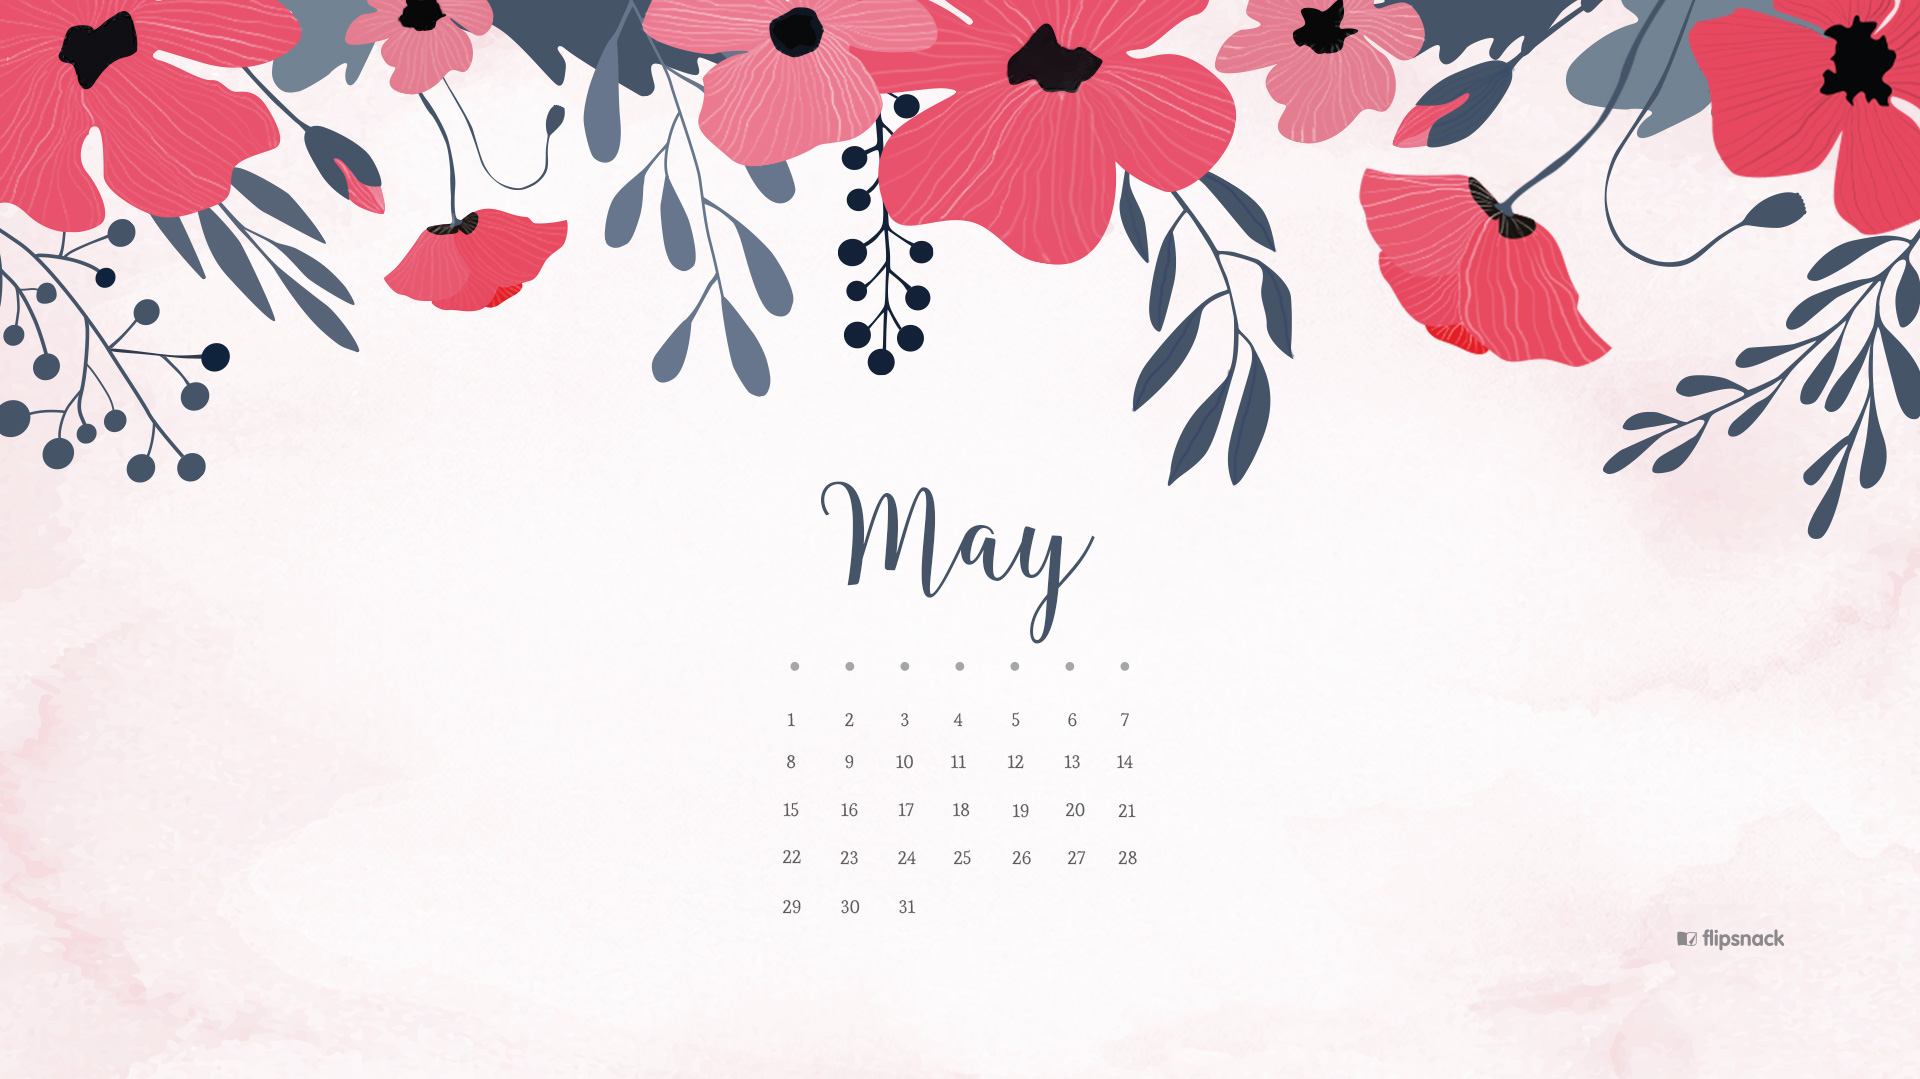 Floral May 2019 Desktop Calendar Wallpaper - May Calendar Desktop Wallpaper 2019 - HD Wallpaper 